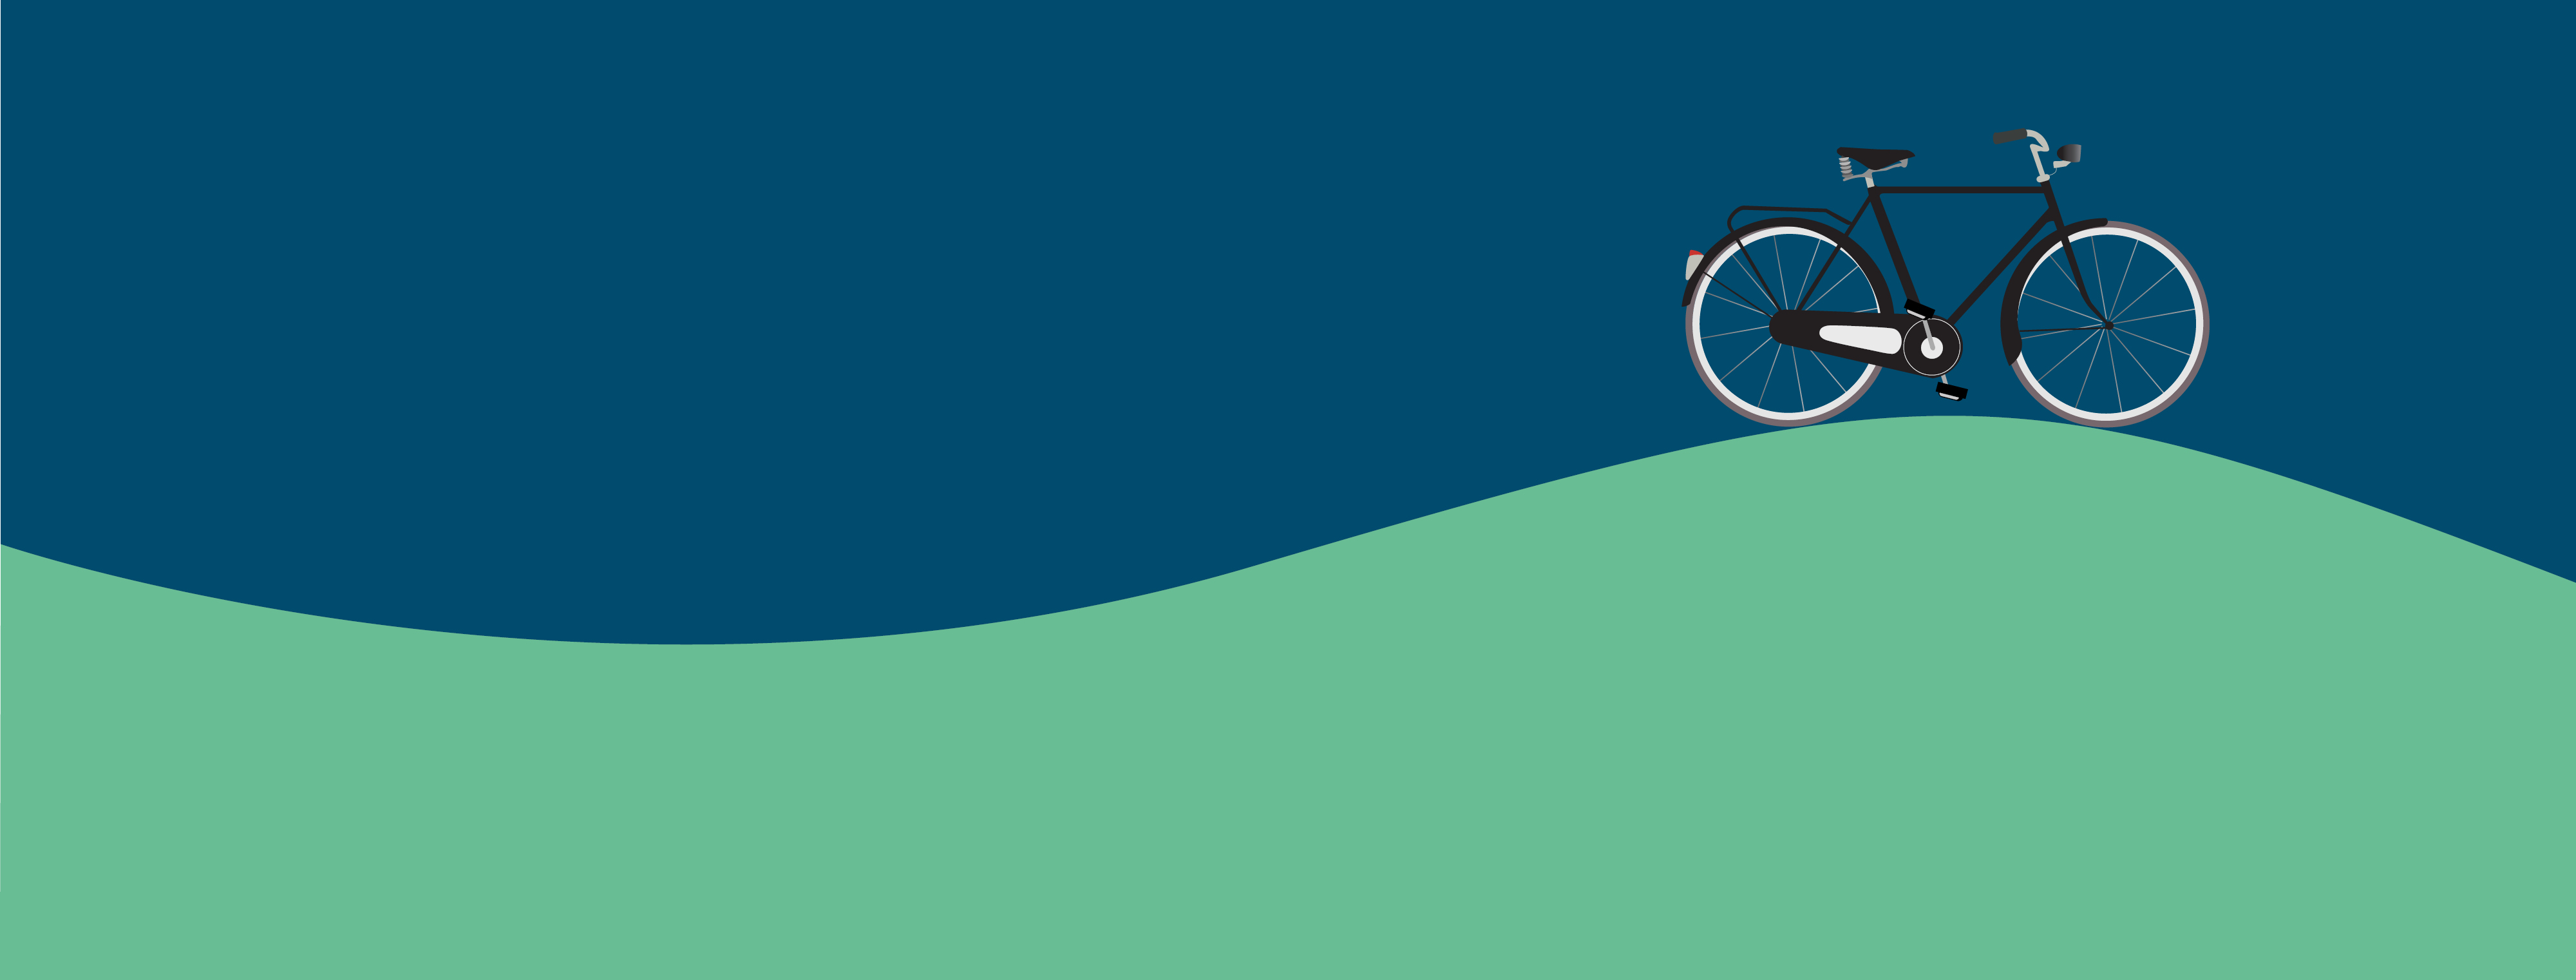 Tecknad cykel på kulle.